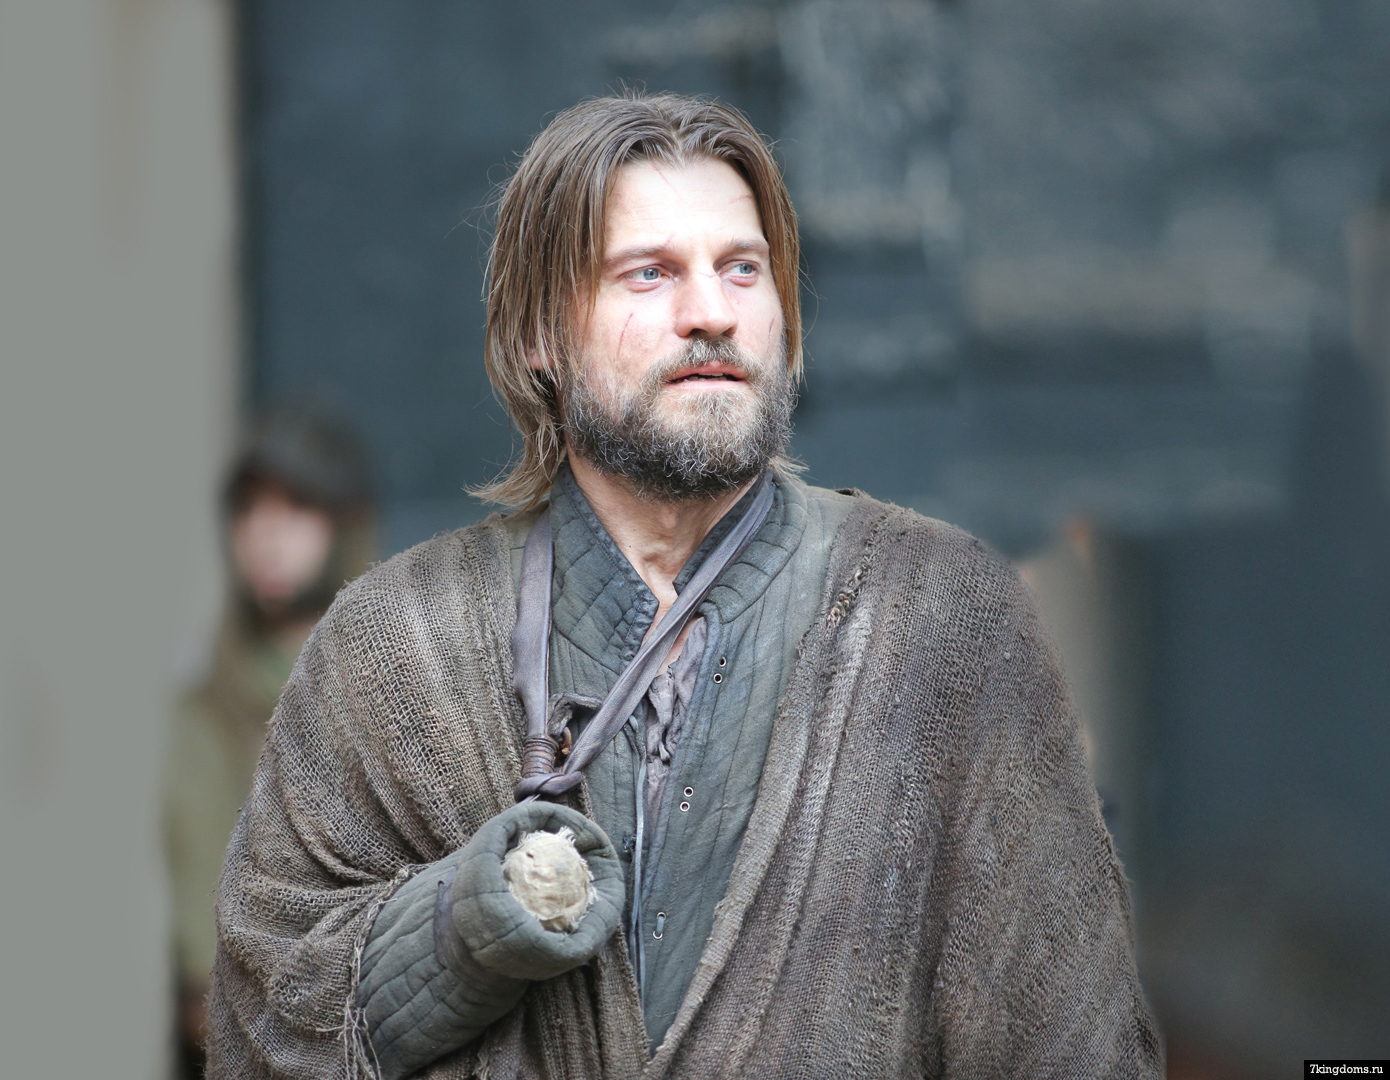 Nikolaj Coster-Waldau as Jaime Lannister in 'Game of Thrones' Season 3.